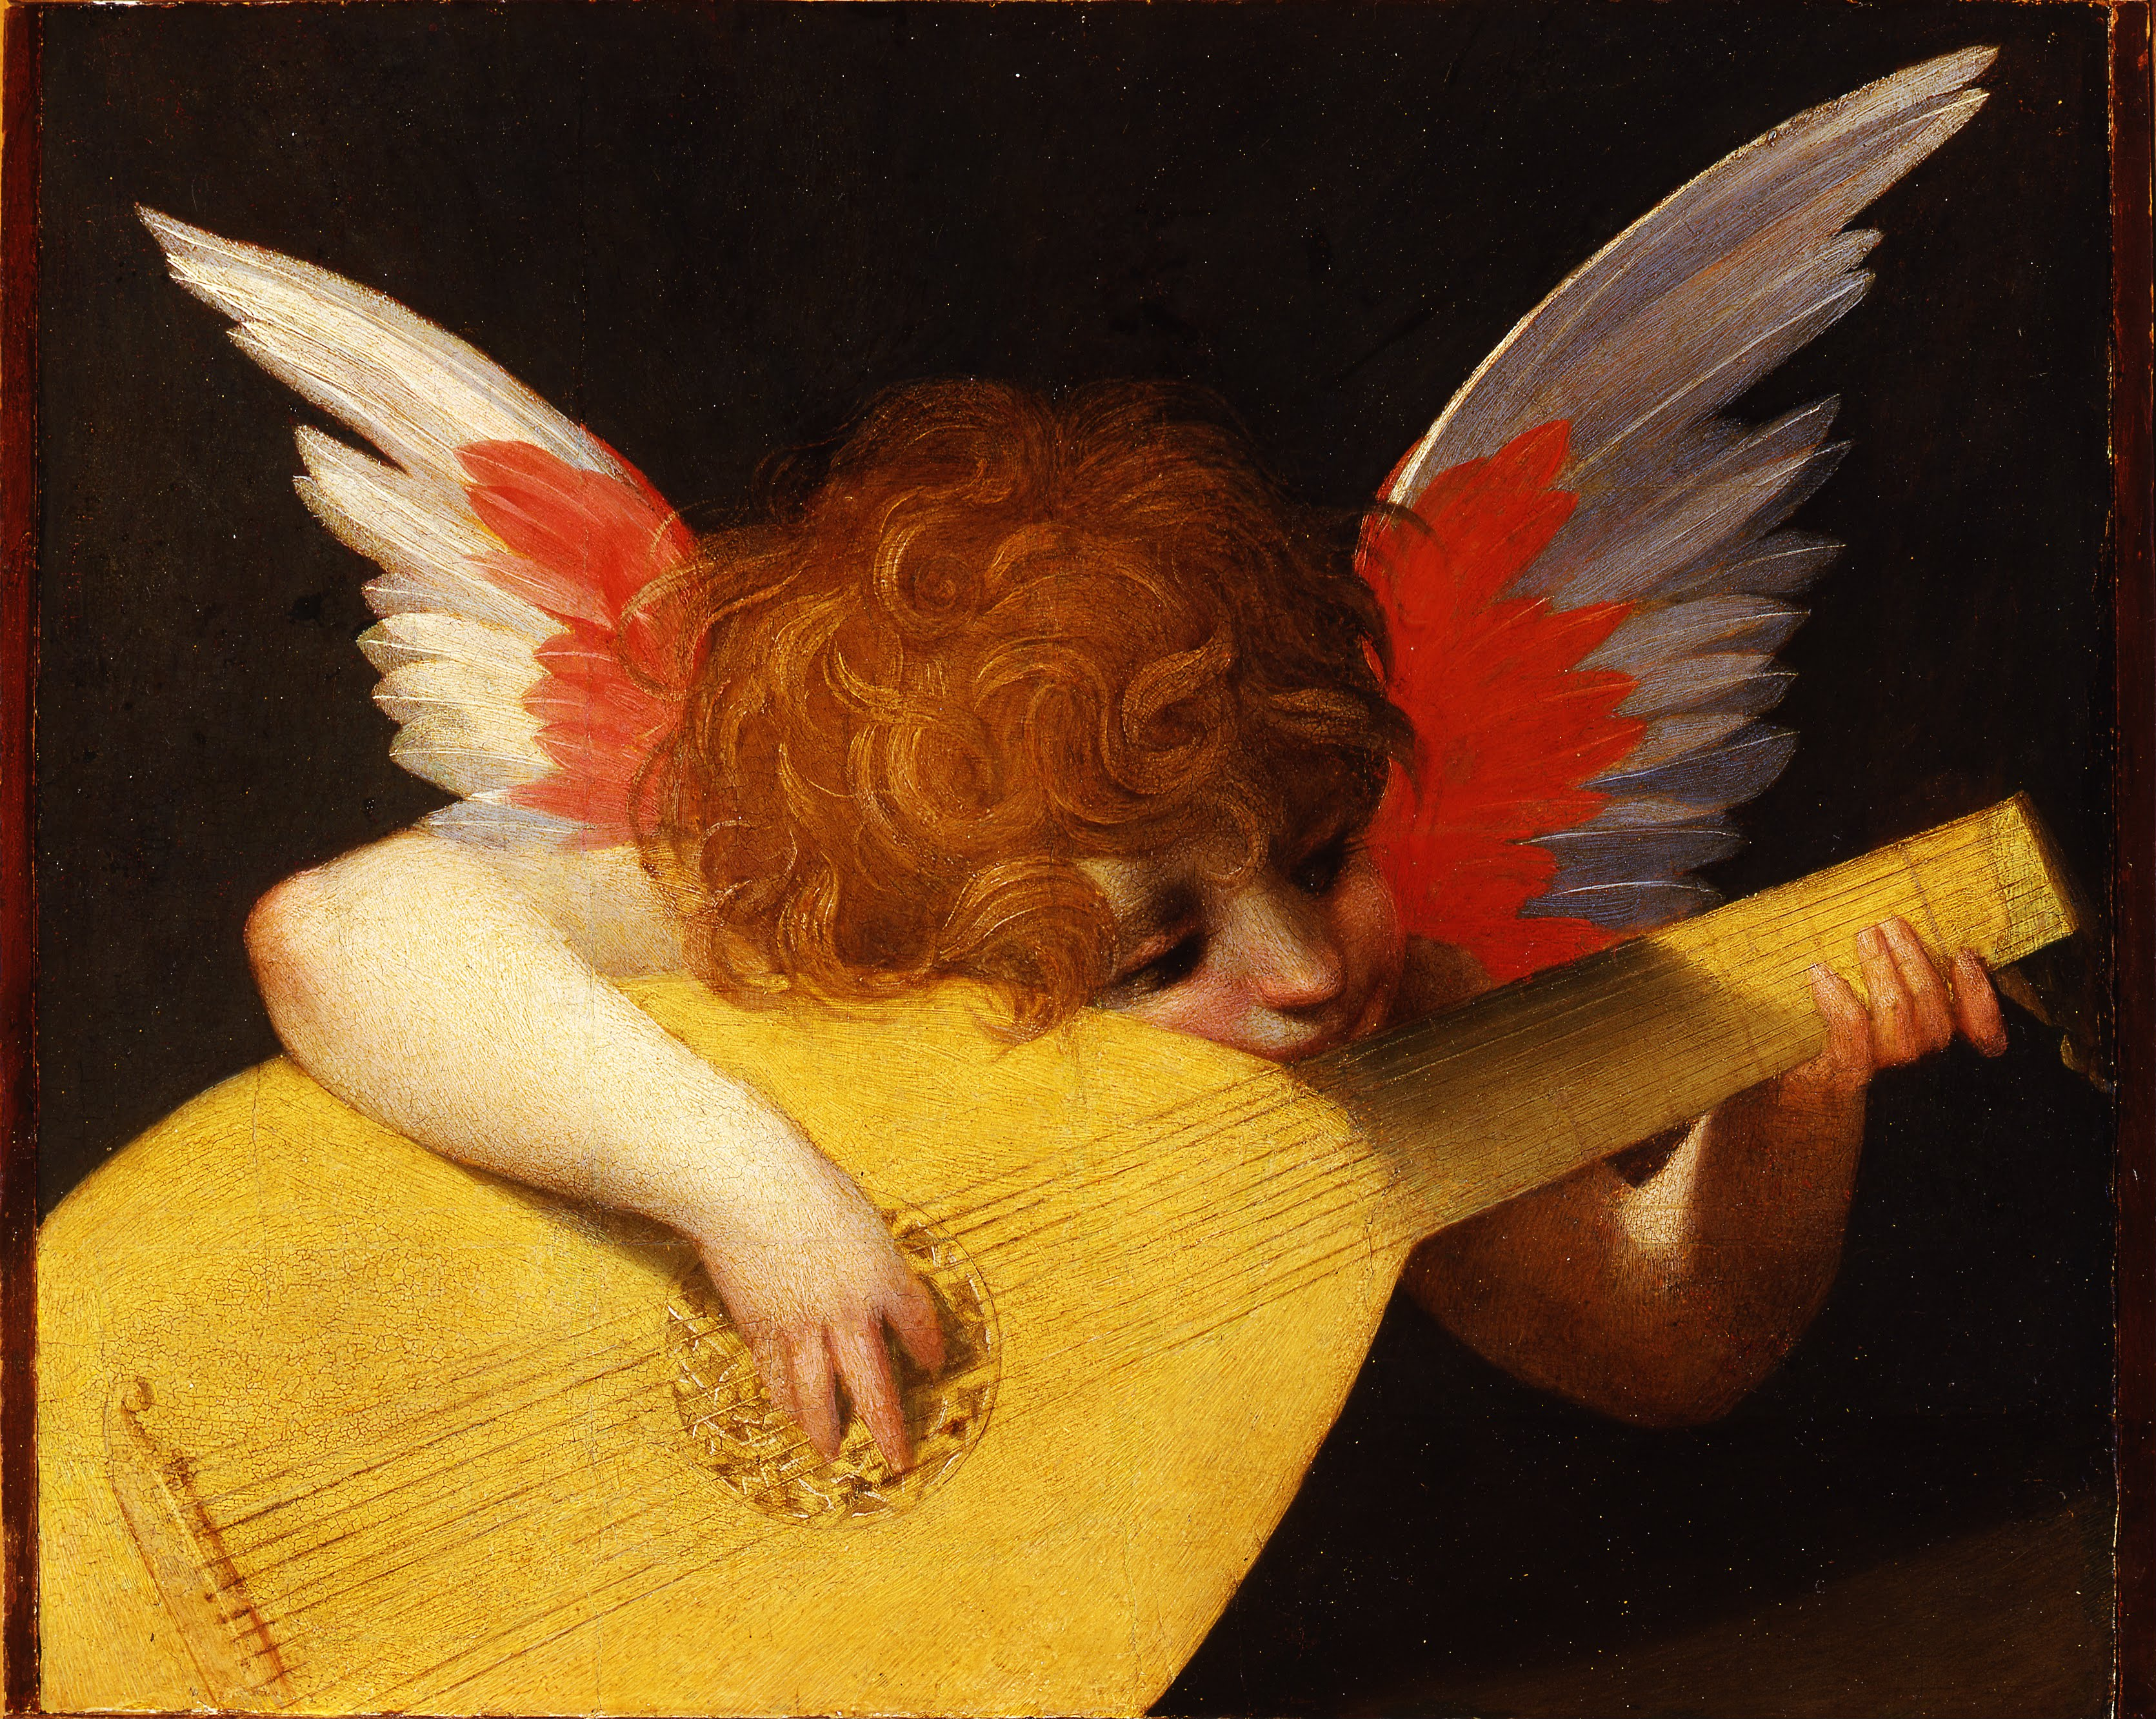 Angel Playing the Lute by Rosso Fiorentino - 1521 - 39.5 x 47 cm Galleria degli Uffizi